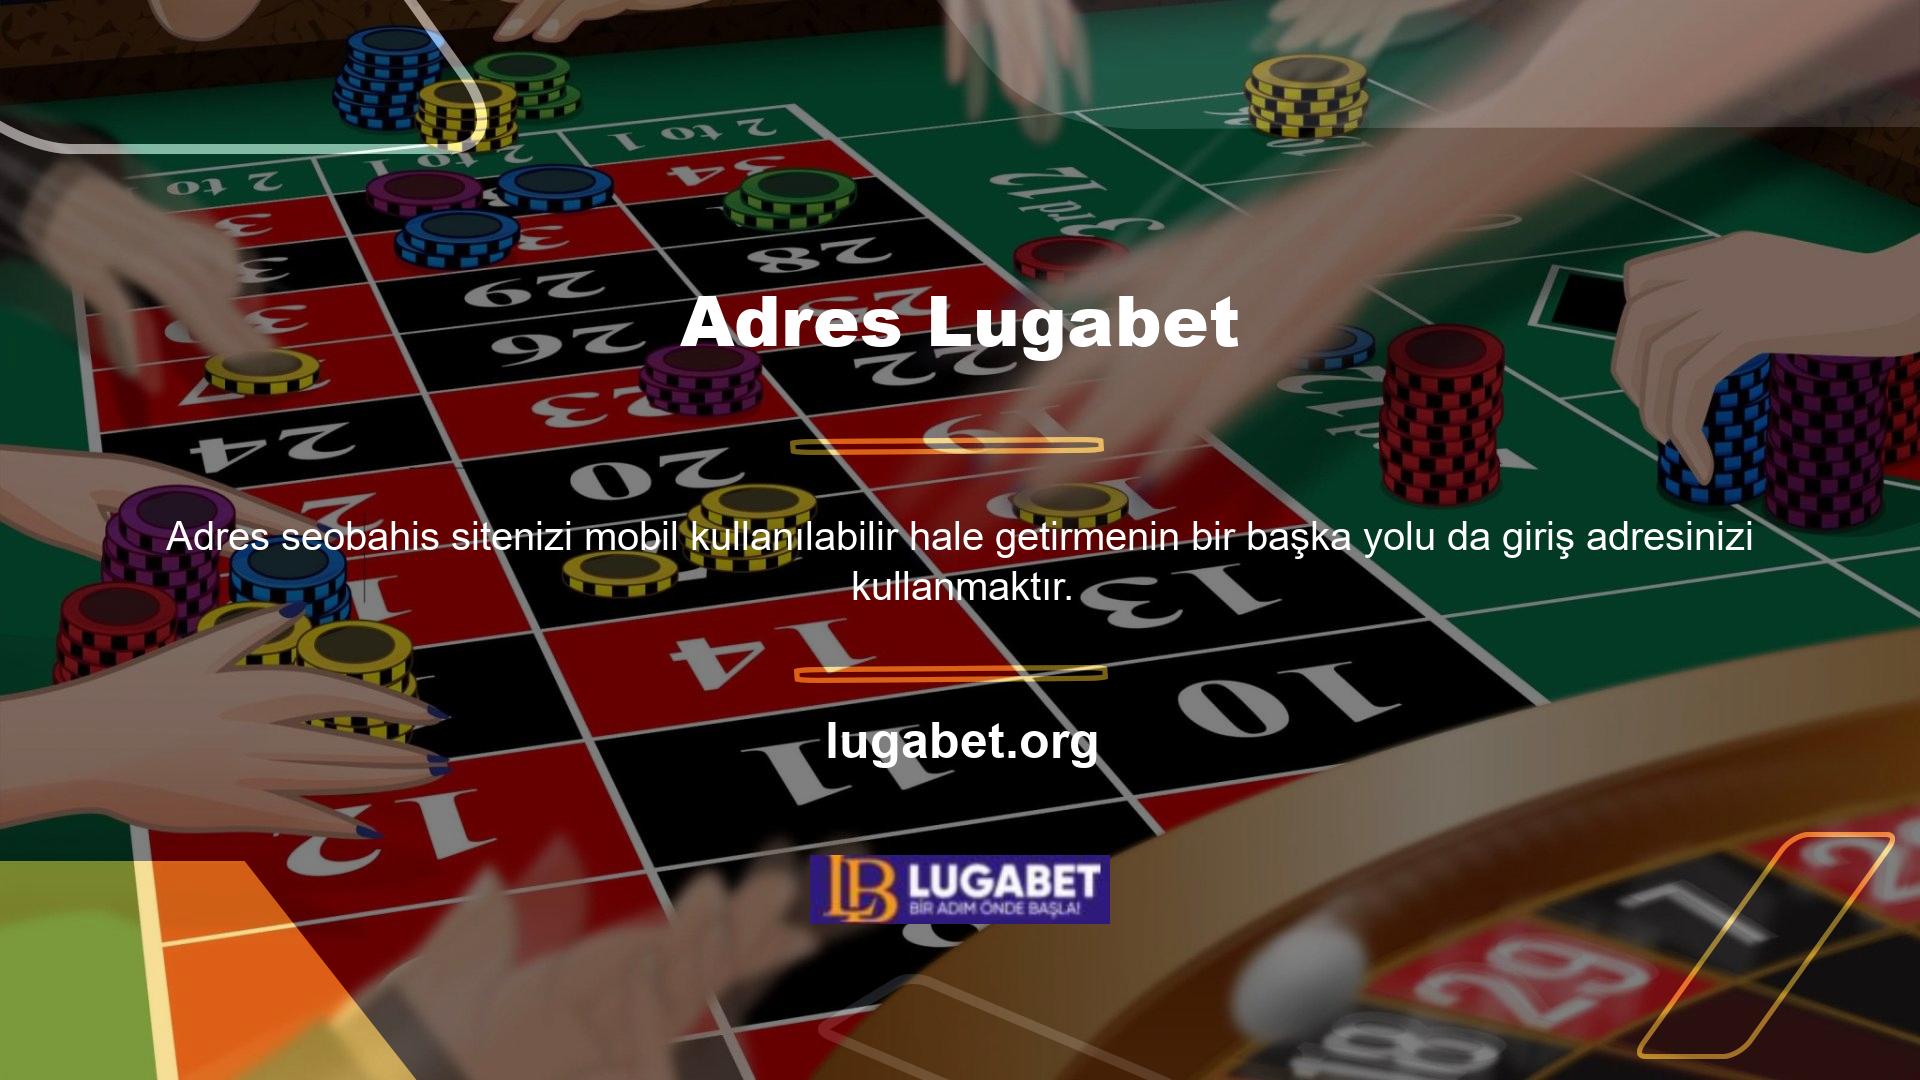 Lugabet cep telefonu kayıt adresi Lugabet olarak ayarlanmıştır